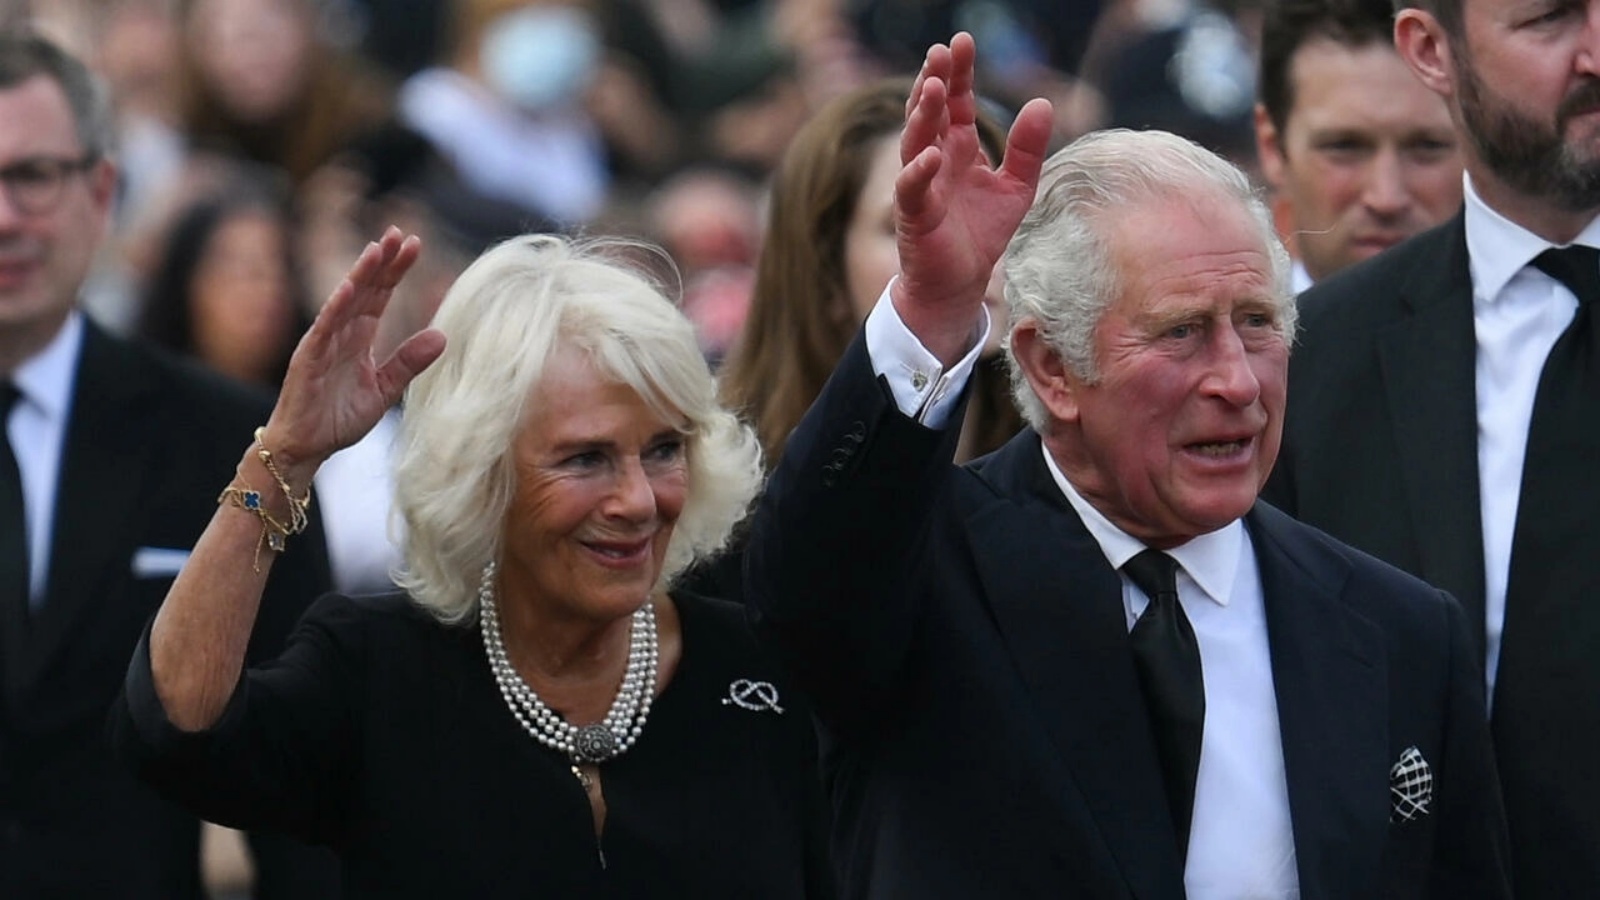 الملك تشارلز الثالث وزوجته كاميلا بين الحشود عند وصولهم إلى قصر باكنغهام